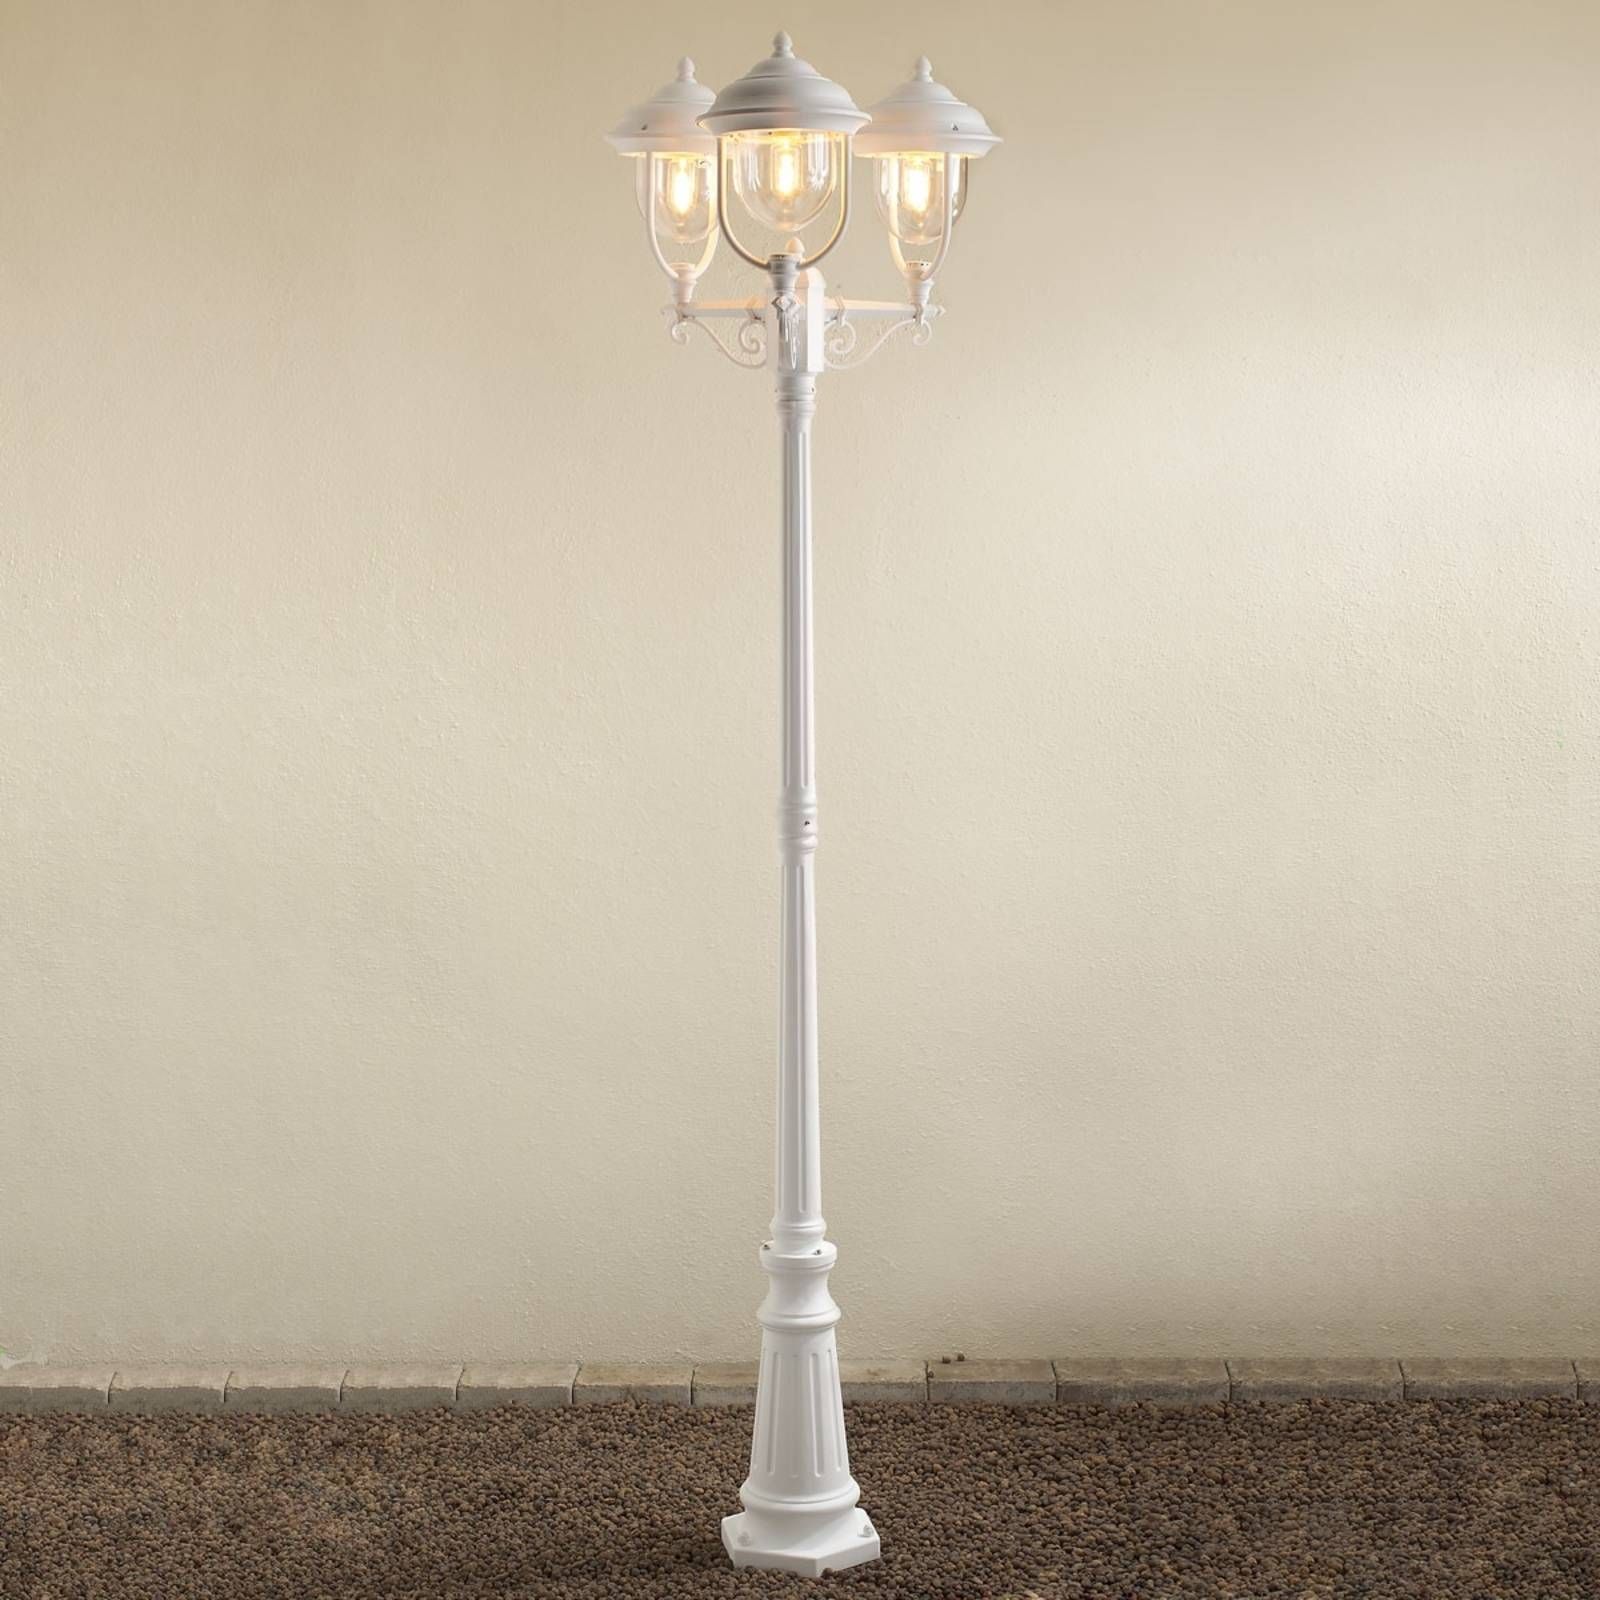 Konstsmide Stĺpové svietidlo Parma 3-plameňové v bielej, hliník, akrylové sklo, E27, 75W, K: 218cm